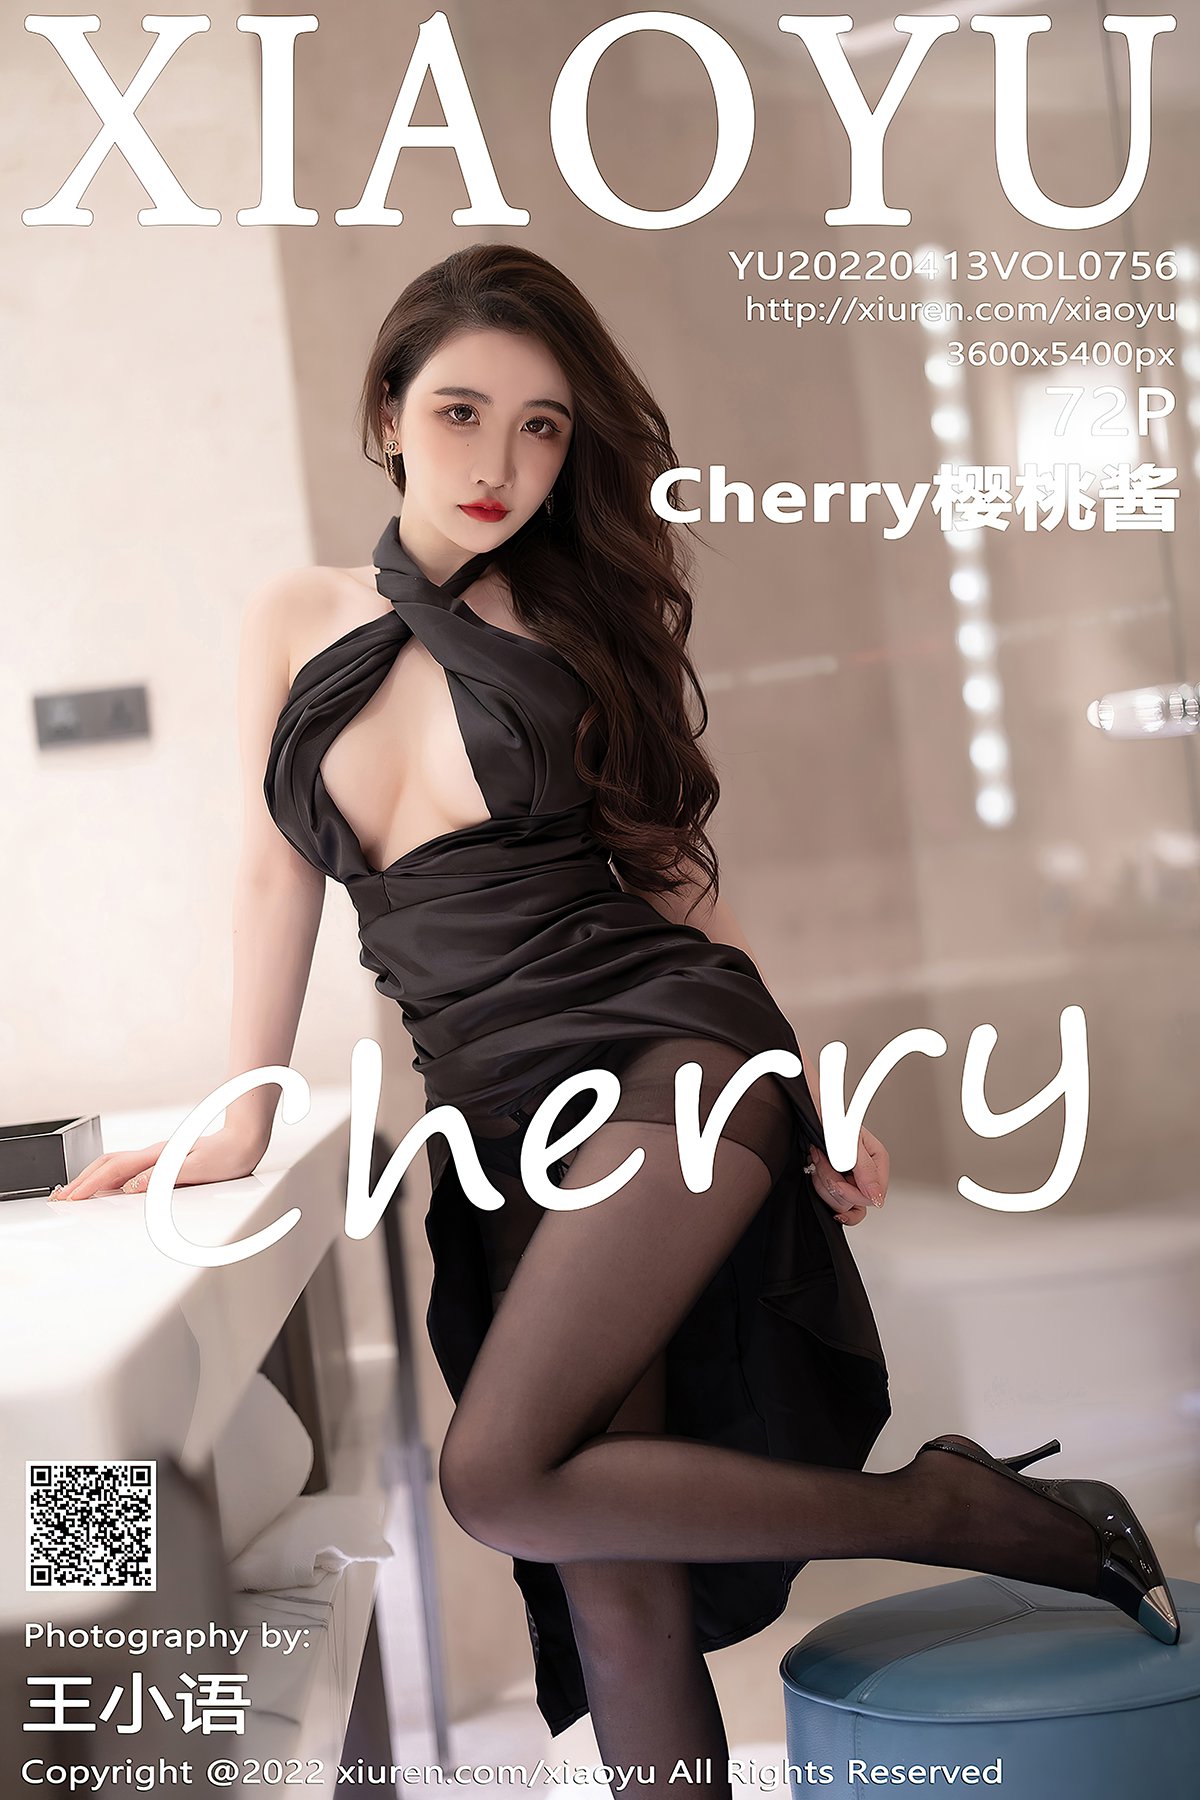 XiaoYu语画界 Vol.756 Cherry Ying Tao Jiang